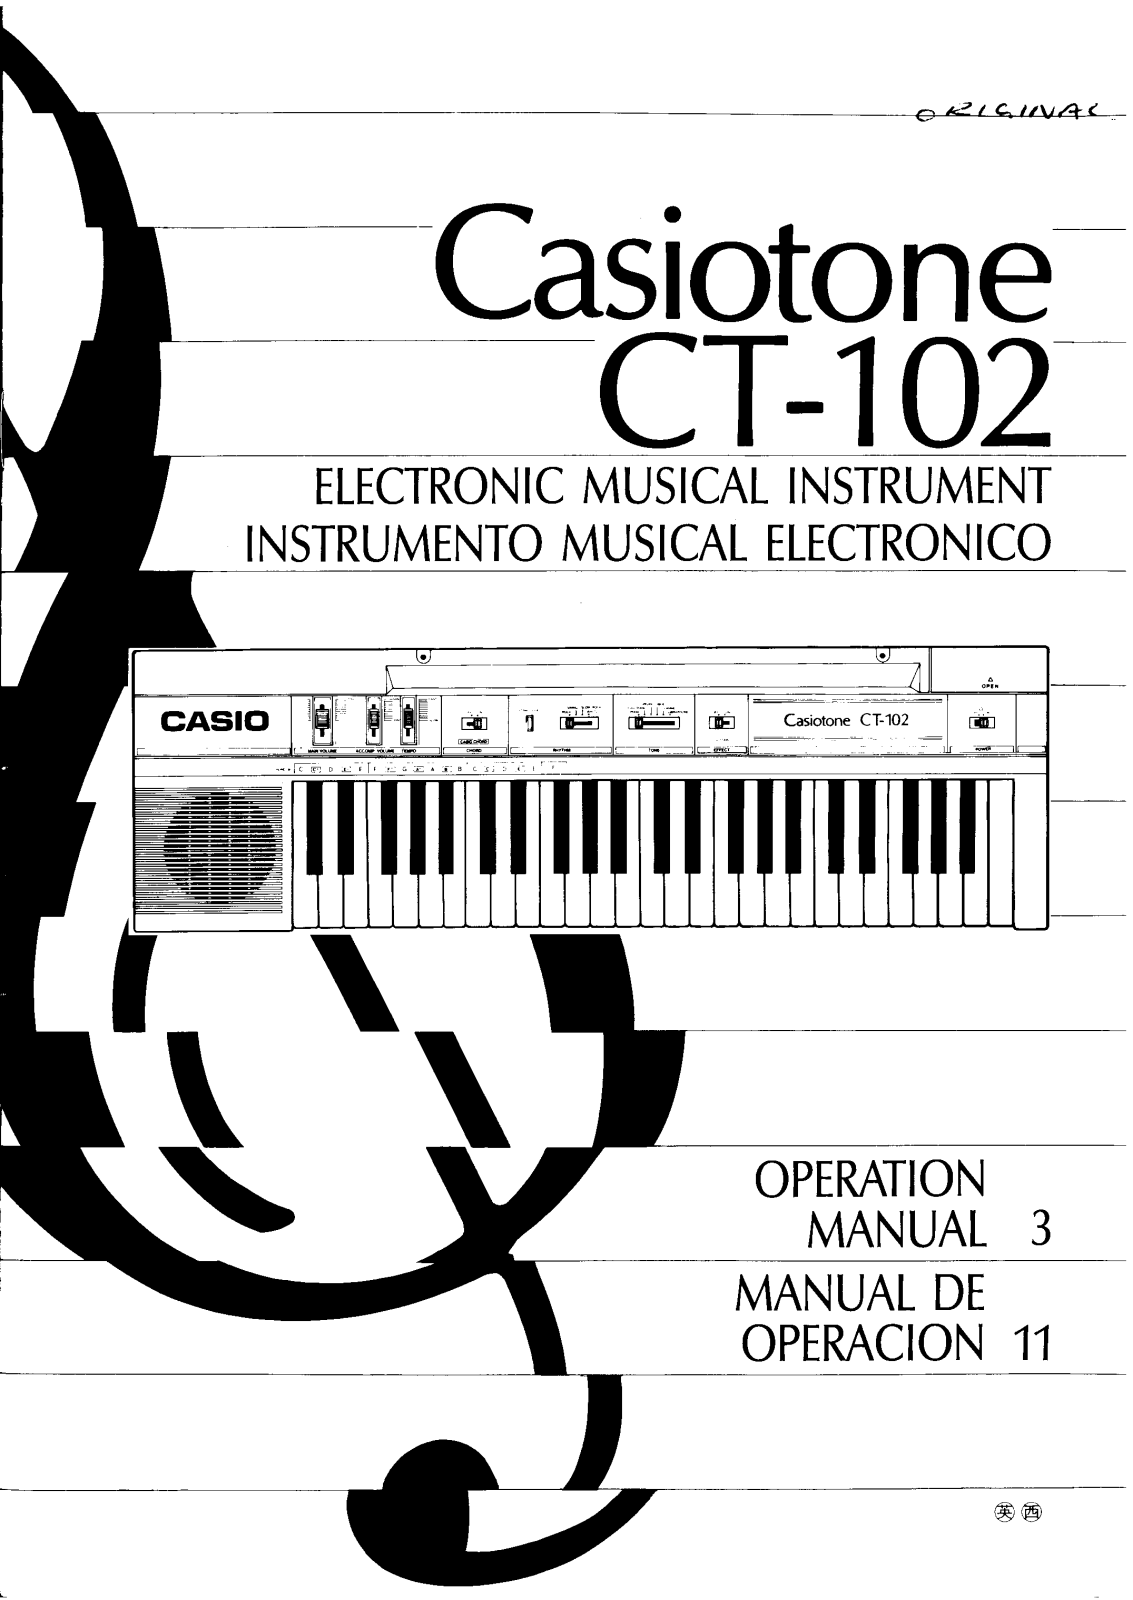 Casio CT-102 User Manual